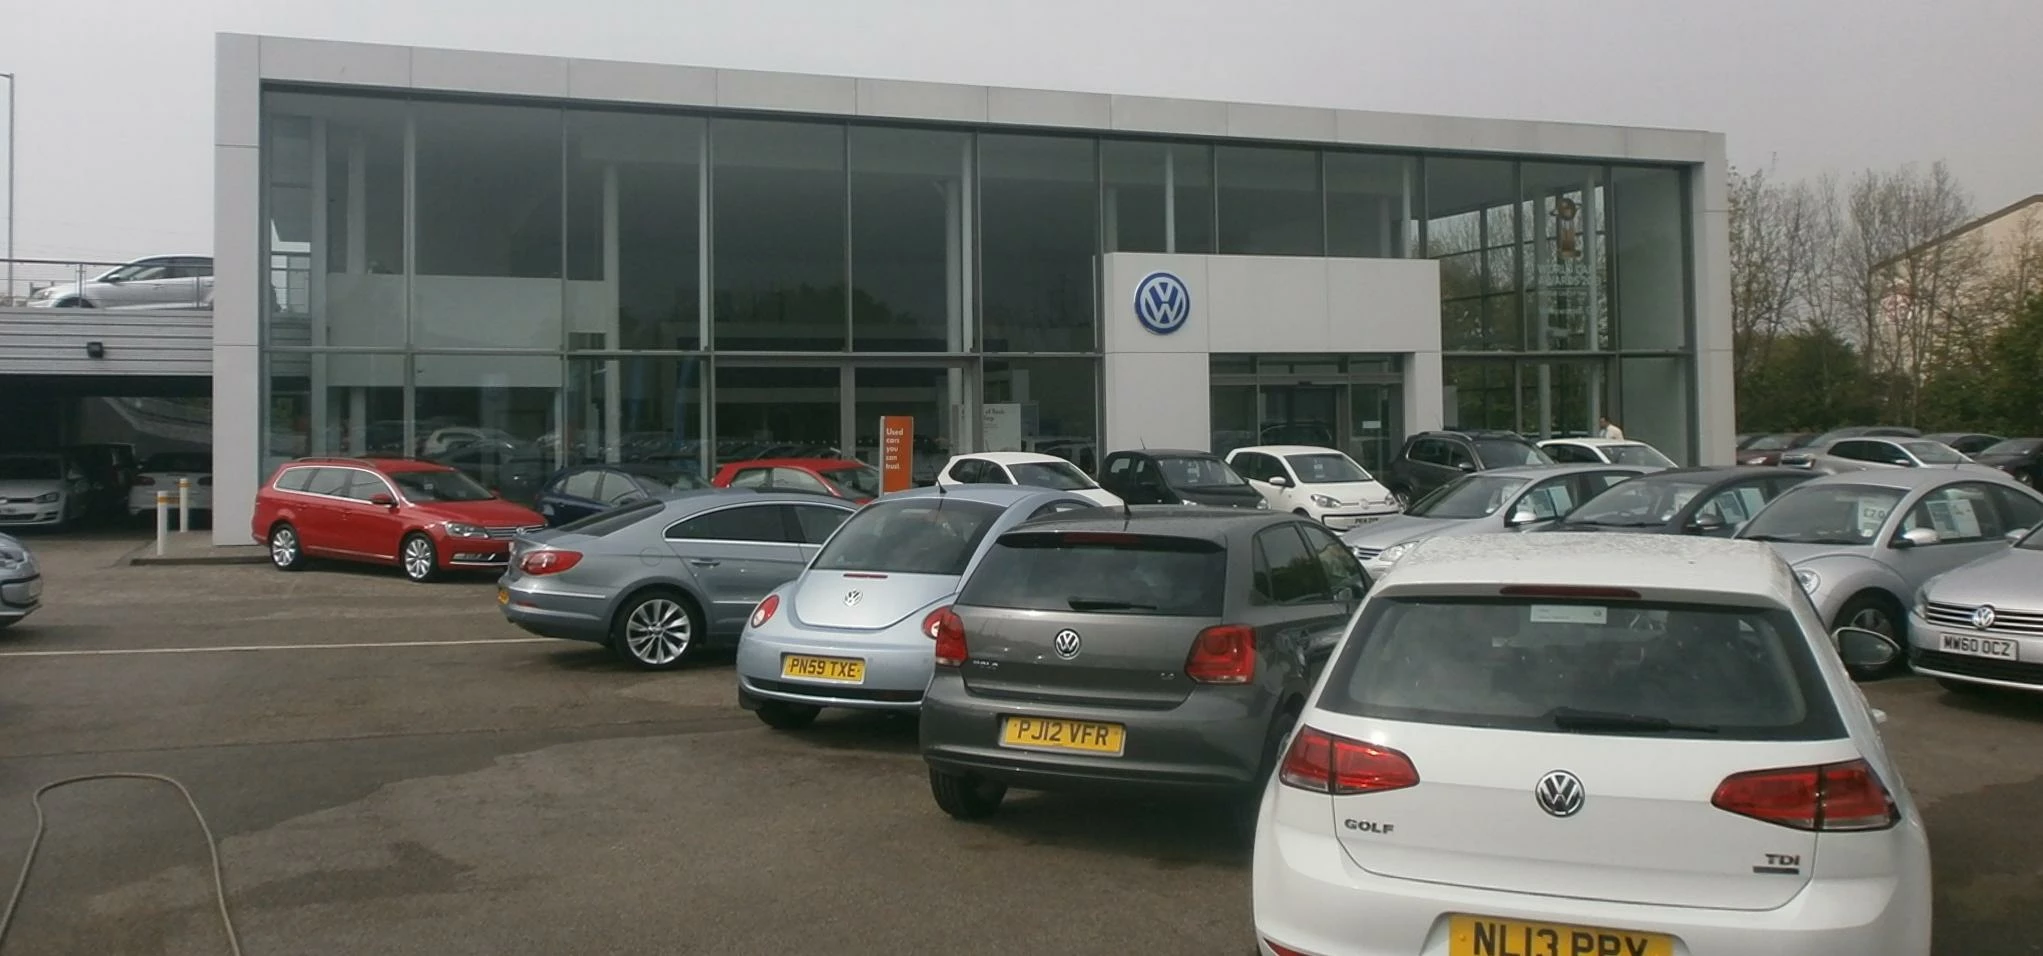 Volkswagen Blackpool Dealership 